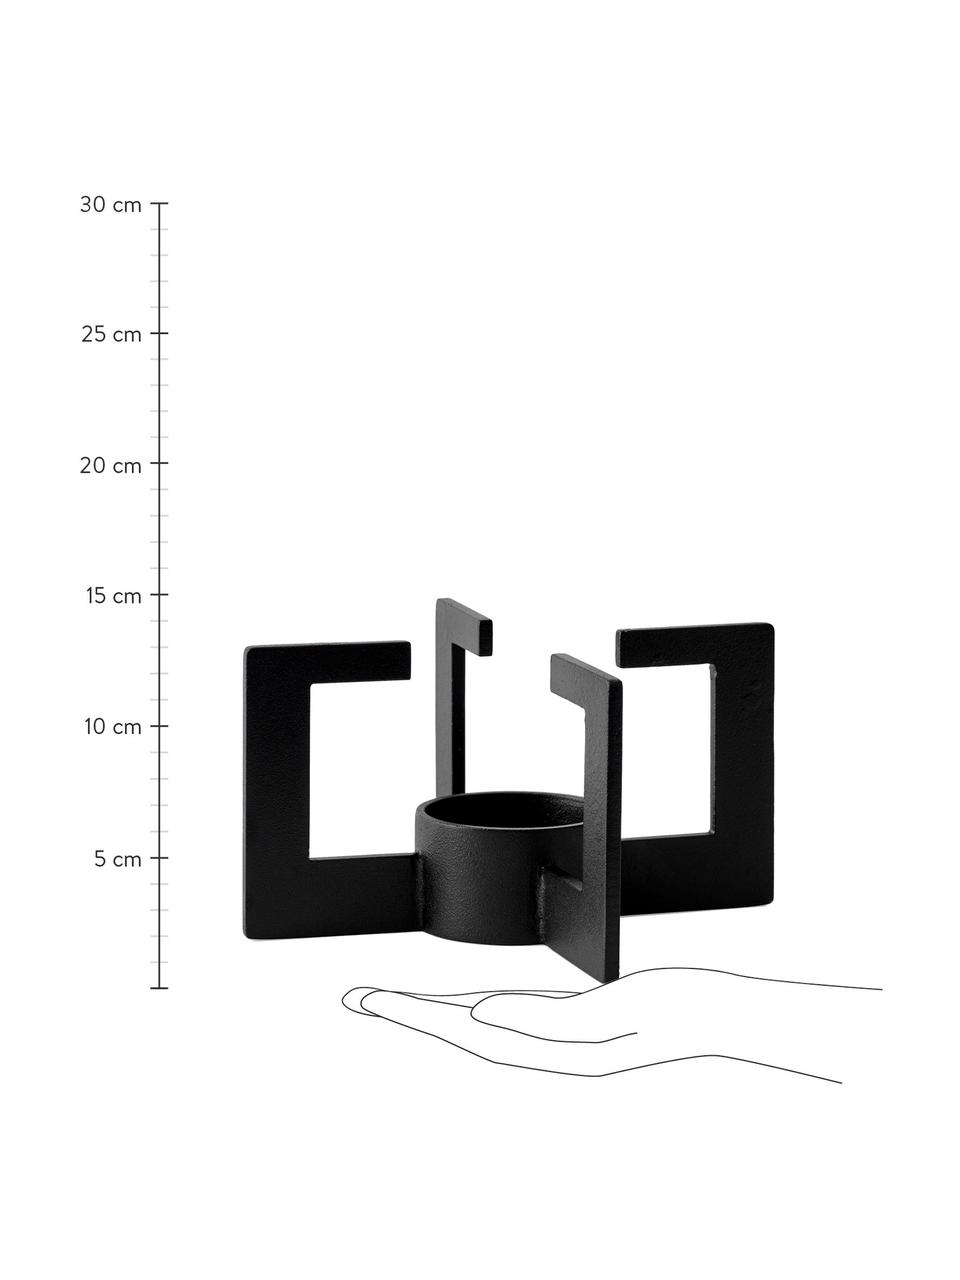 Calentador de vela de diseño Warm-Up, Metal con pintura en polvo, caucho, Negro, Ø 8 x Al 15 cm